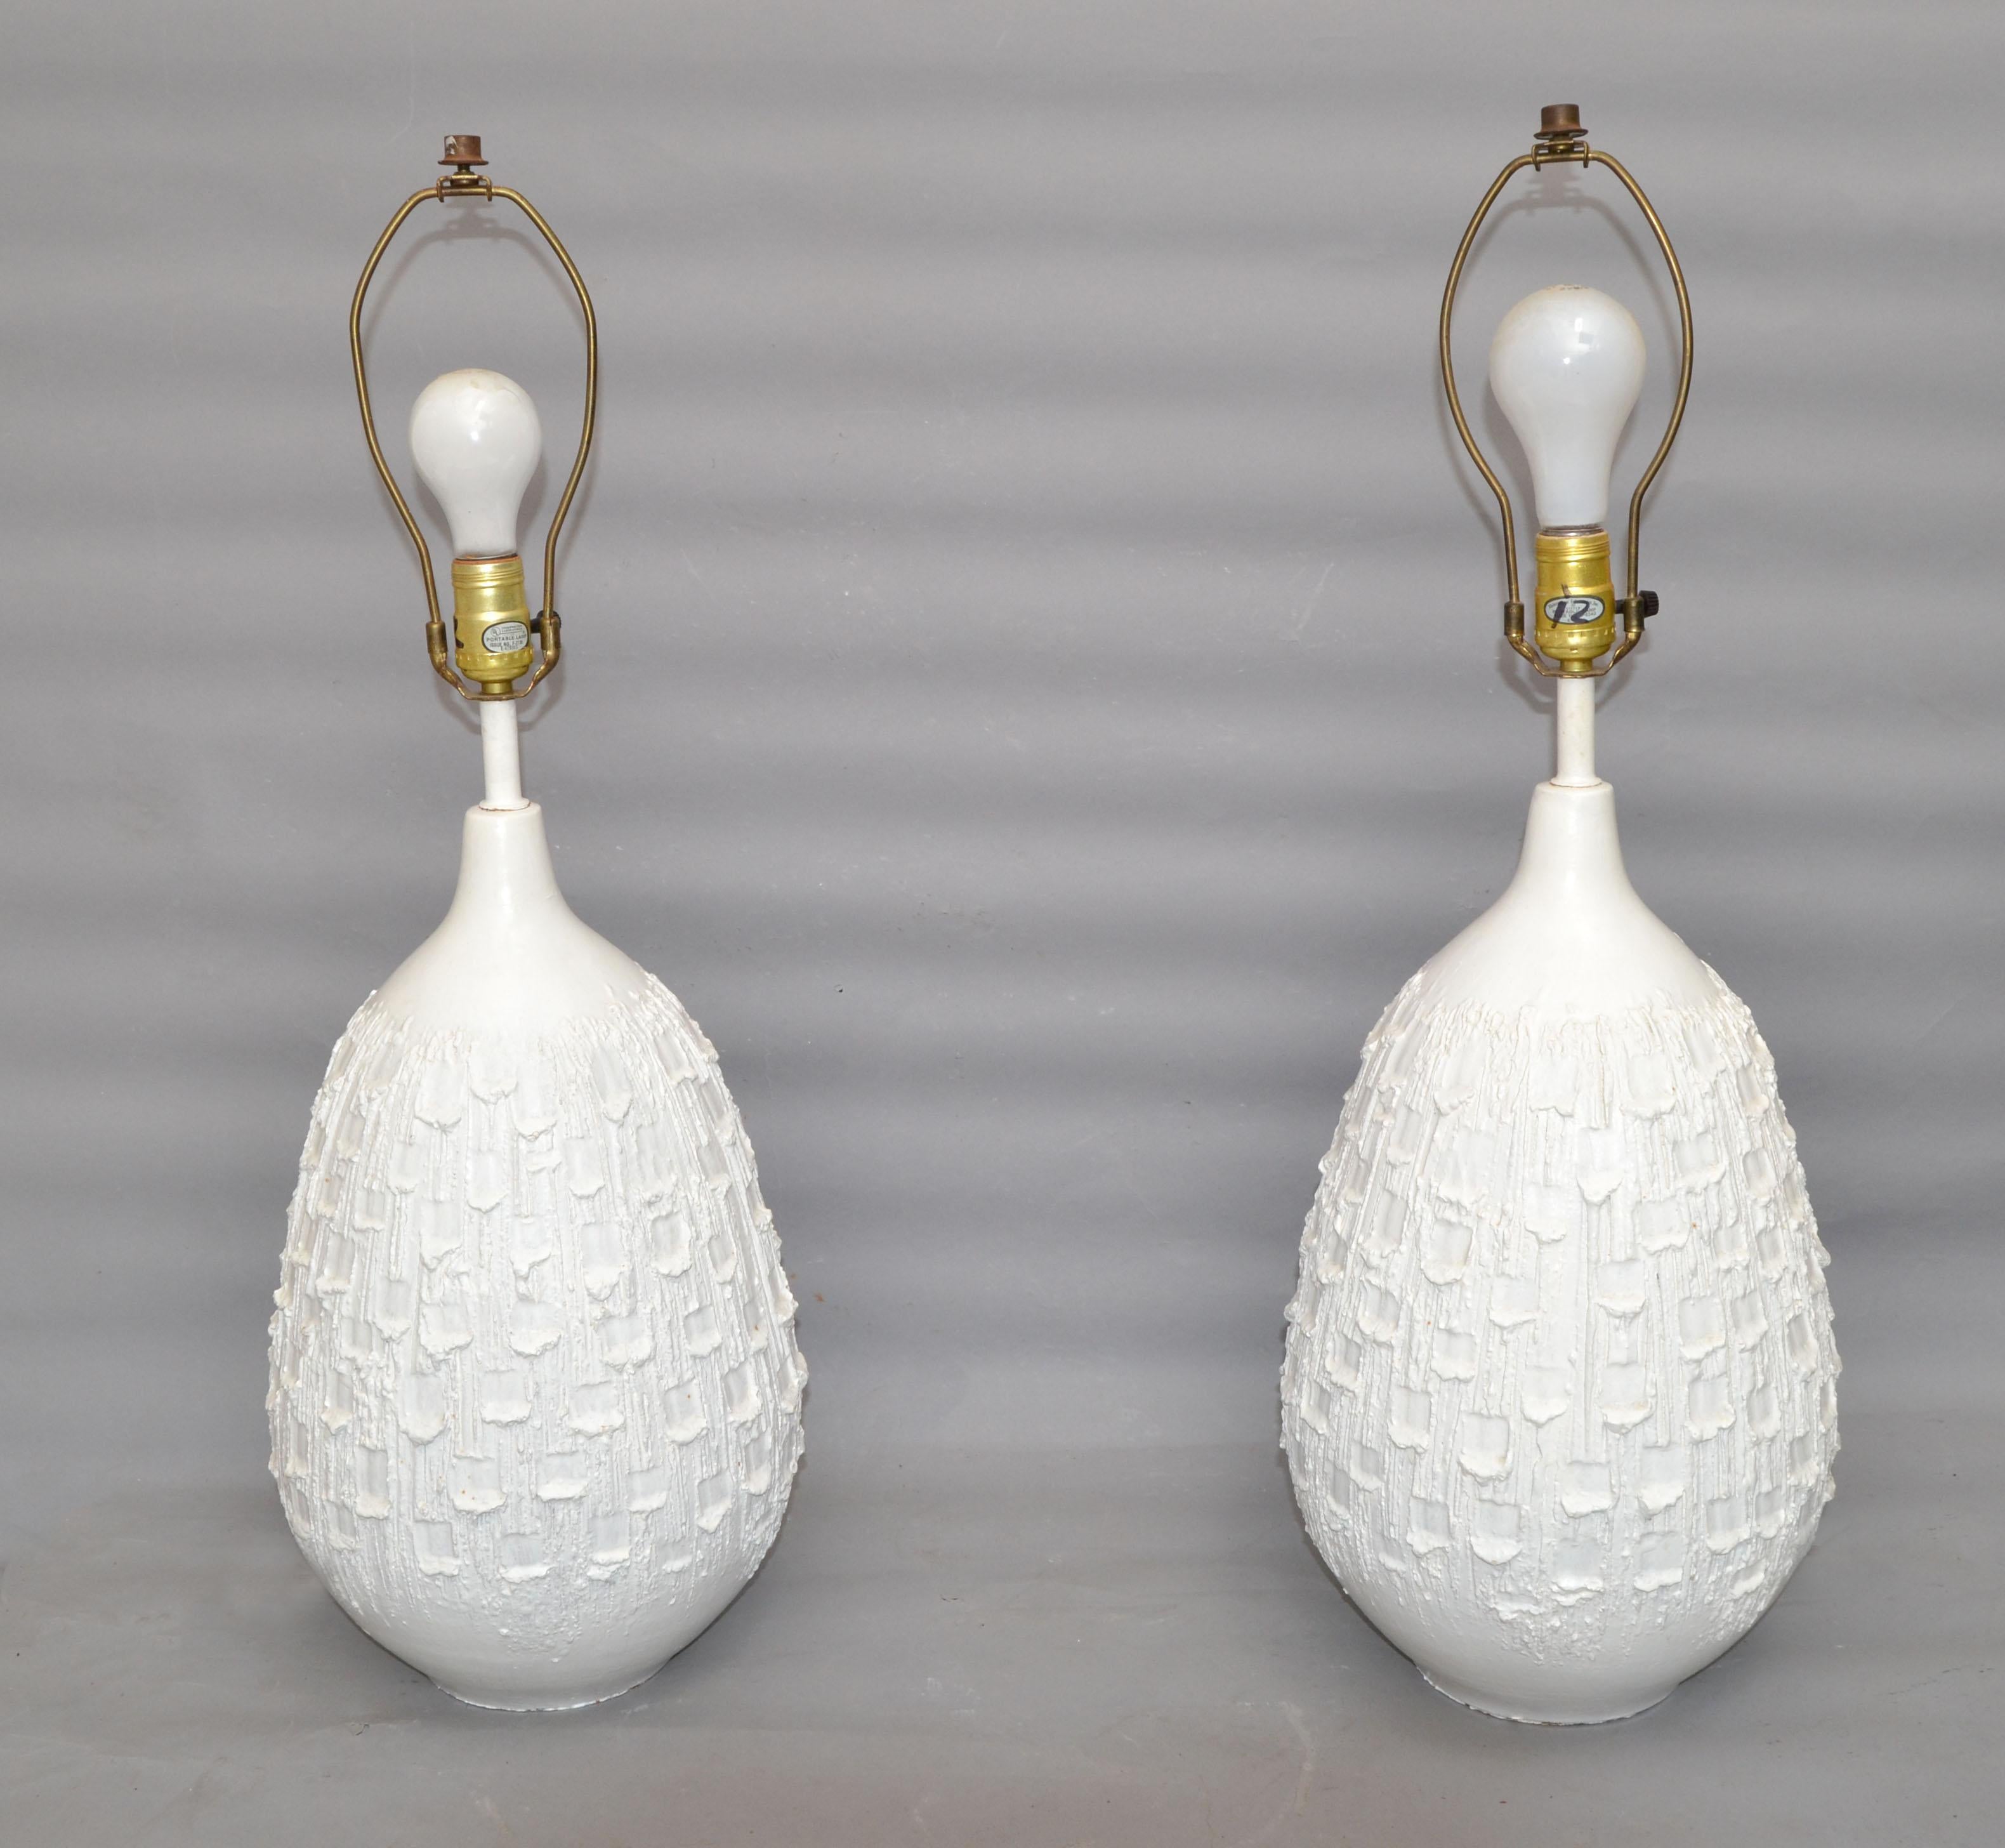 Paire de lampes de table en céramique blanche de style Mid-Century Modern à la texture rugueuse. 
Câblée pour les États-Unis, chaque lampe peut être alimentée par une ampoule ordinaire ou LED.
L'abat-jour n'est pas inclus.
Hauteur au sommet de la